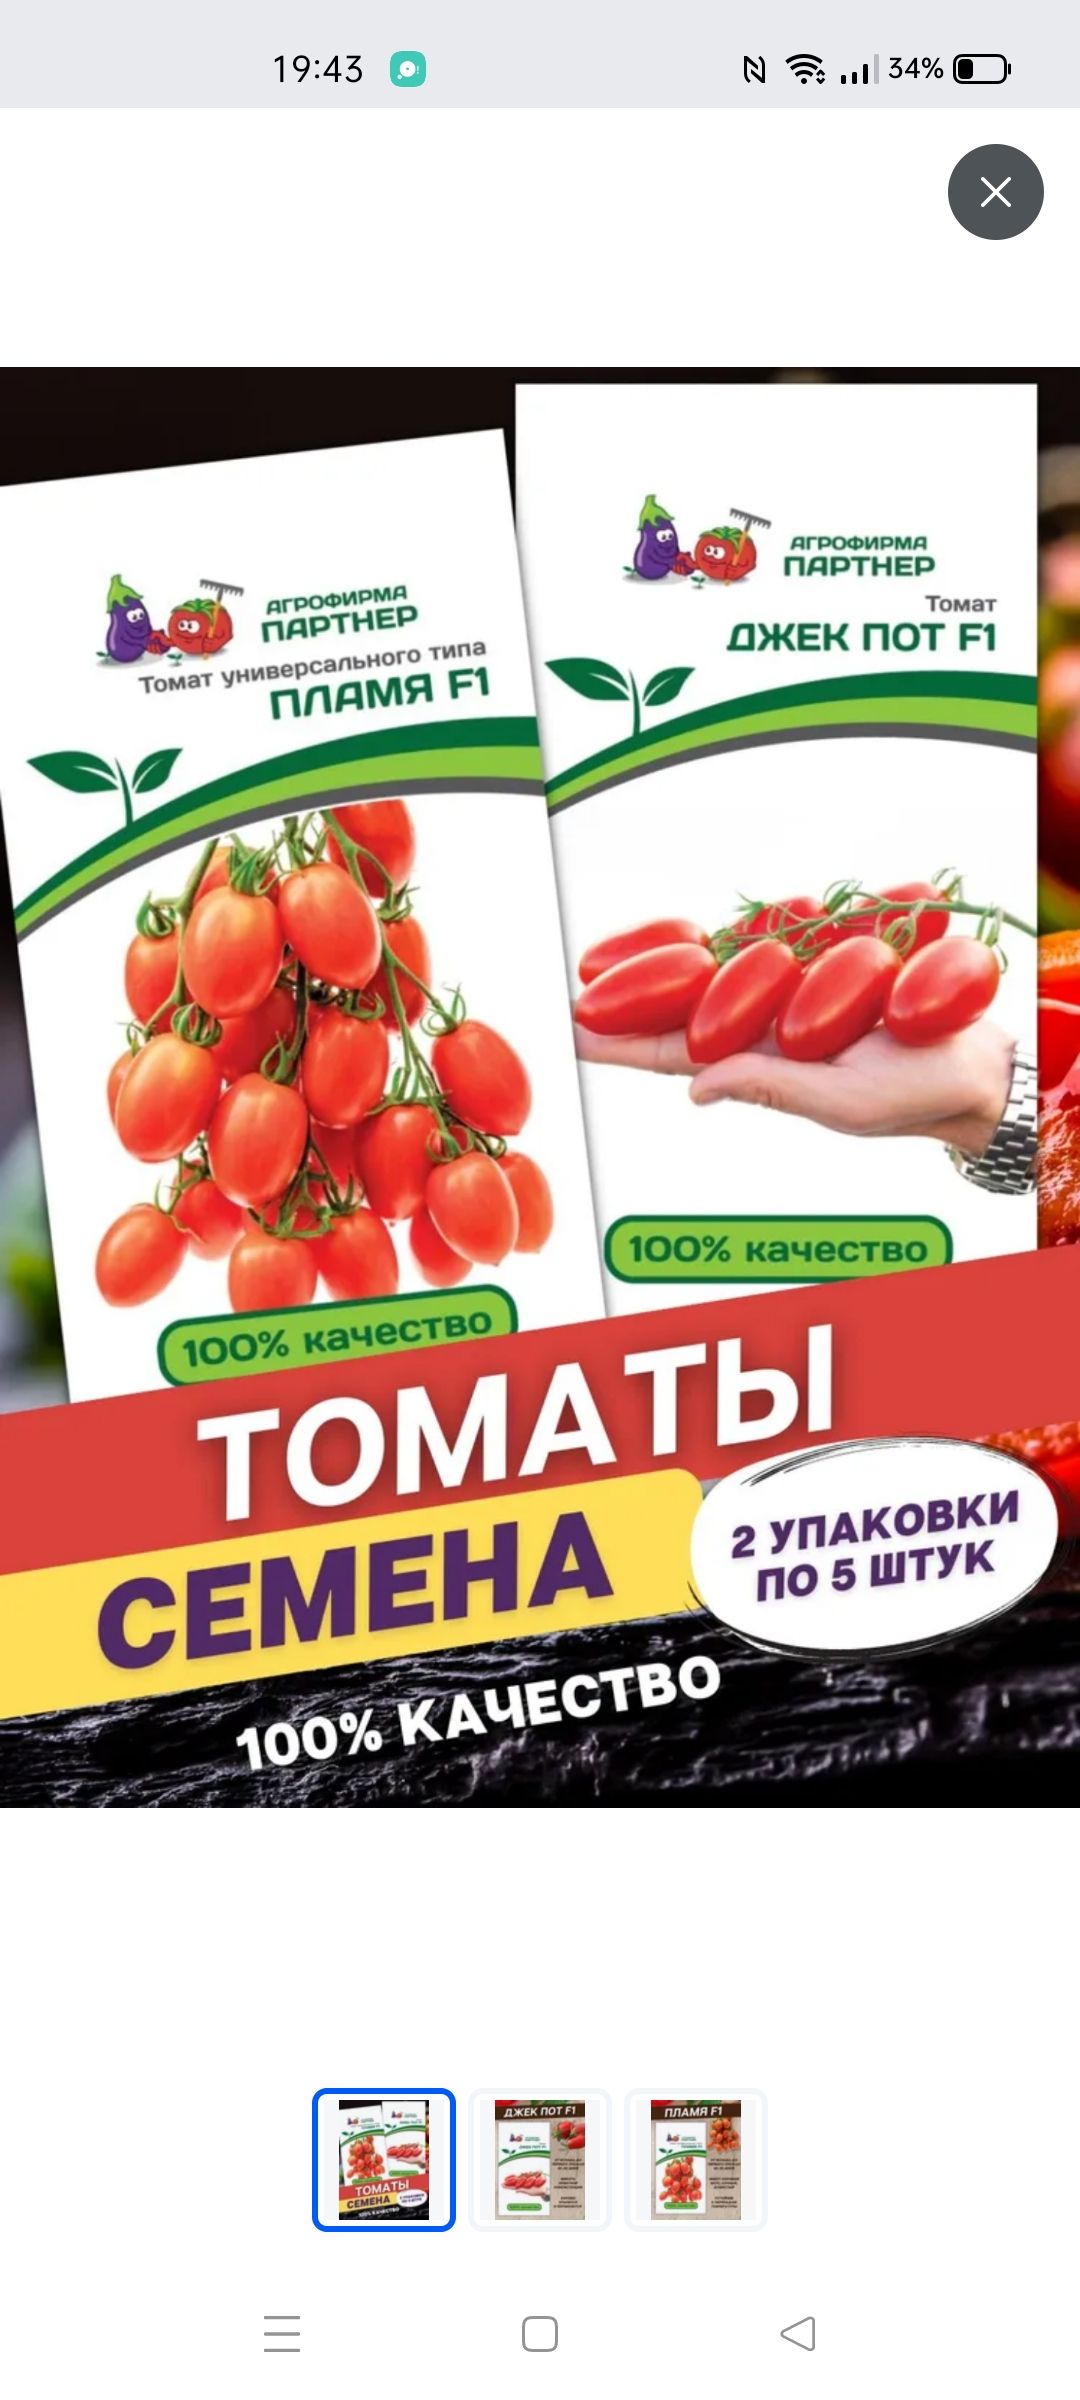 Джекпот семена. Пламя Агрофирма партнер томат. Семена томат пламя f1. Семена томат Джек пот f1. Семена томата партнер пламя.